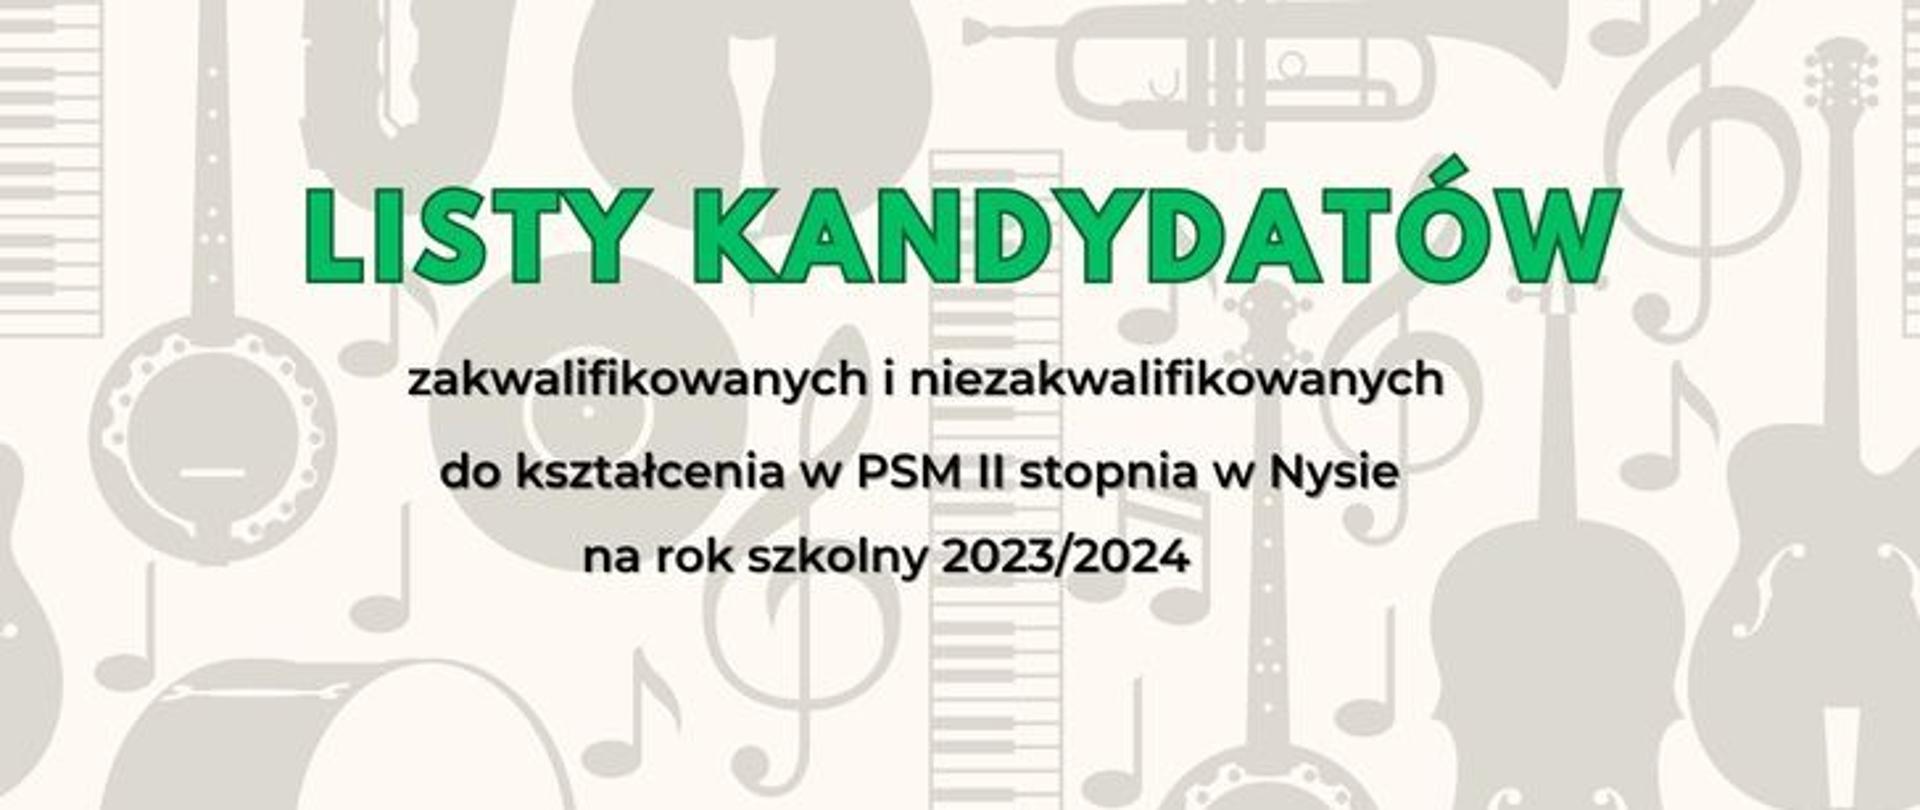 Grafika. Na jasnym tle zawierającym wizerunki instrumentów napisy: LISTY KANDYDATÓW zakwalifikowanych i niezakwalifikowanych do kształcenia w PSM II stopnia w Nysie na rok szkolny 2023/2024.